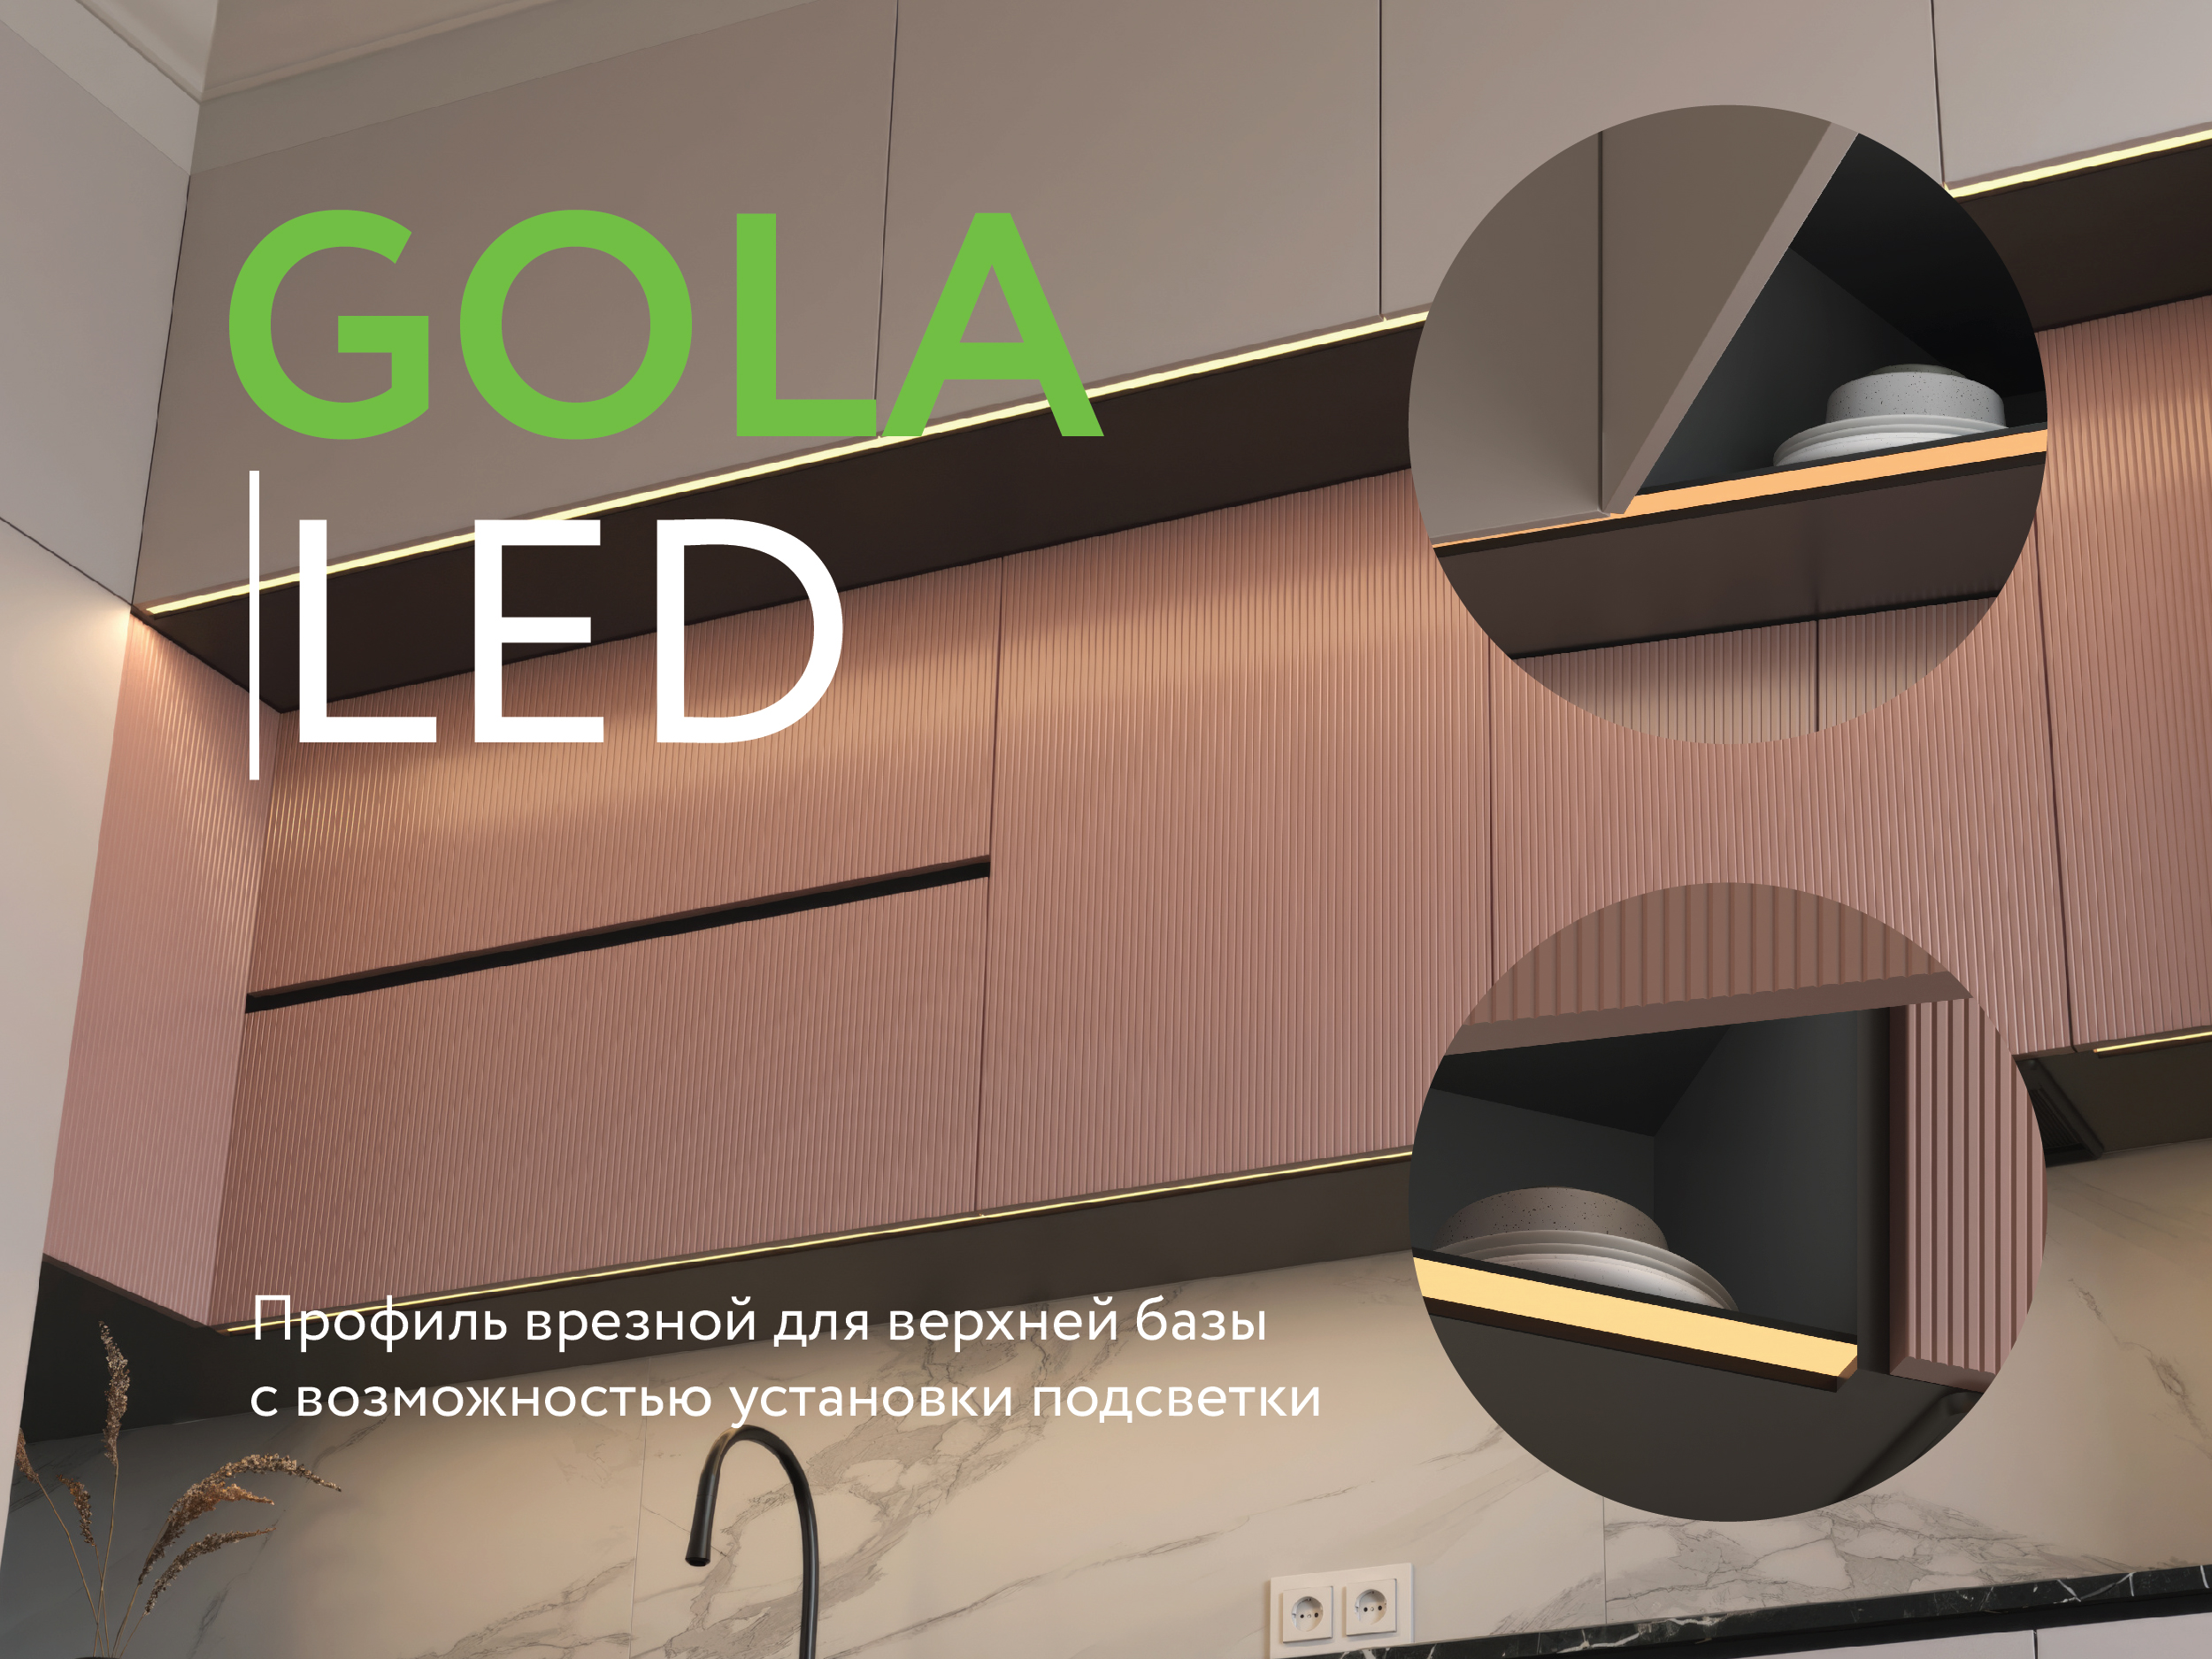 Новый профиль GOLA LED с подсветкой для верхней базы!